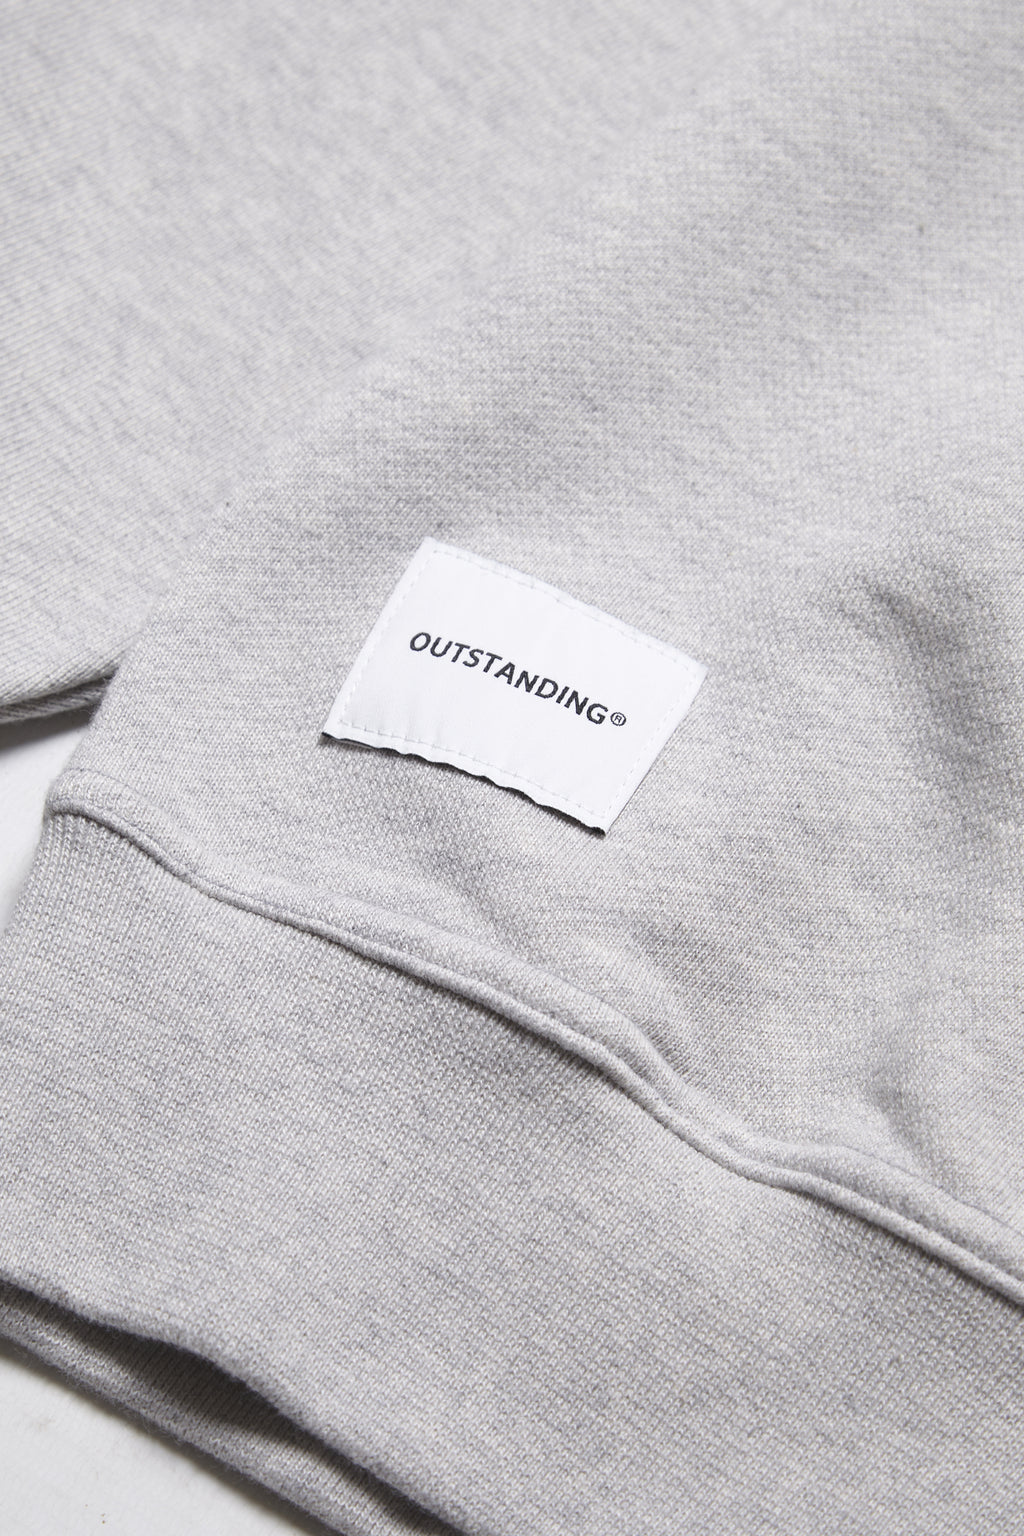 Outstanding & Co. - OSTD Collegiate Sweatshirt - Grey